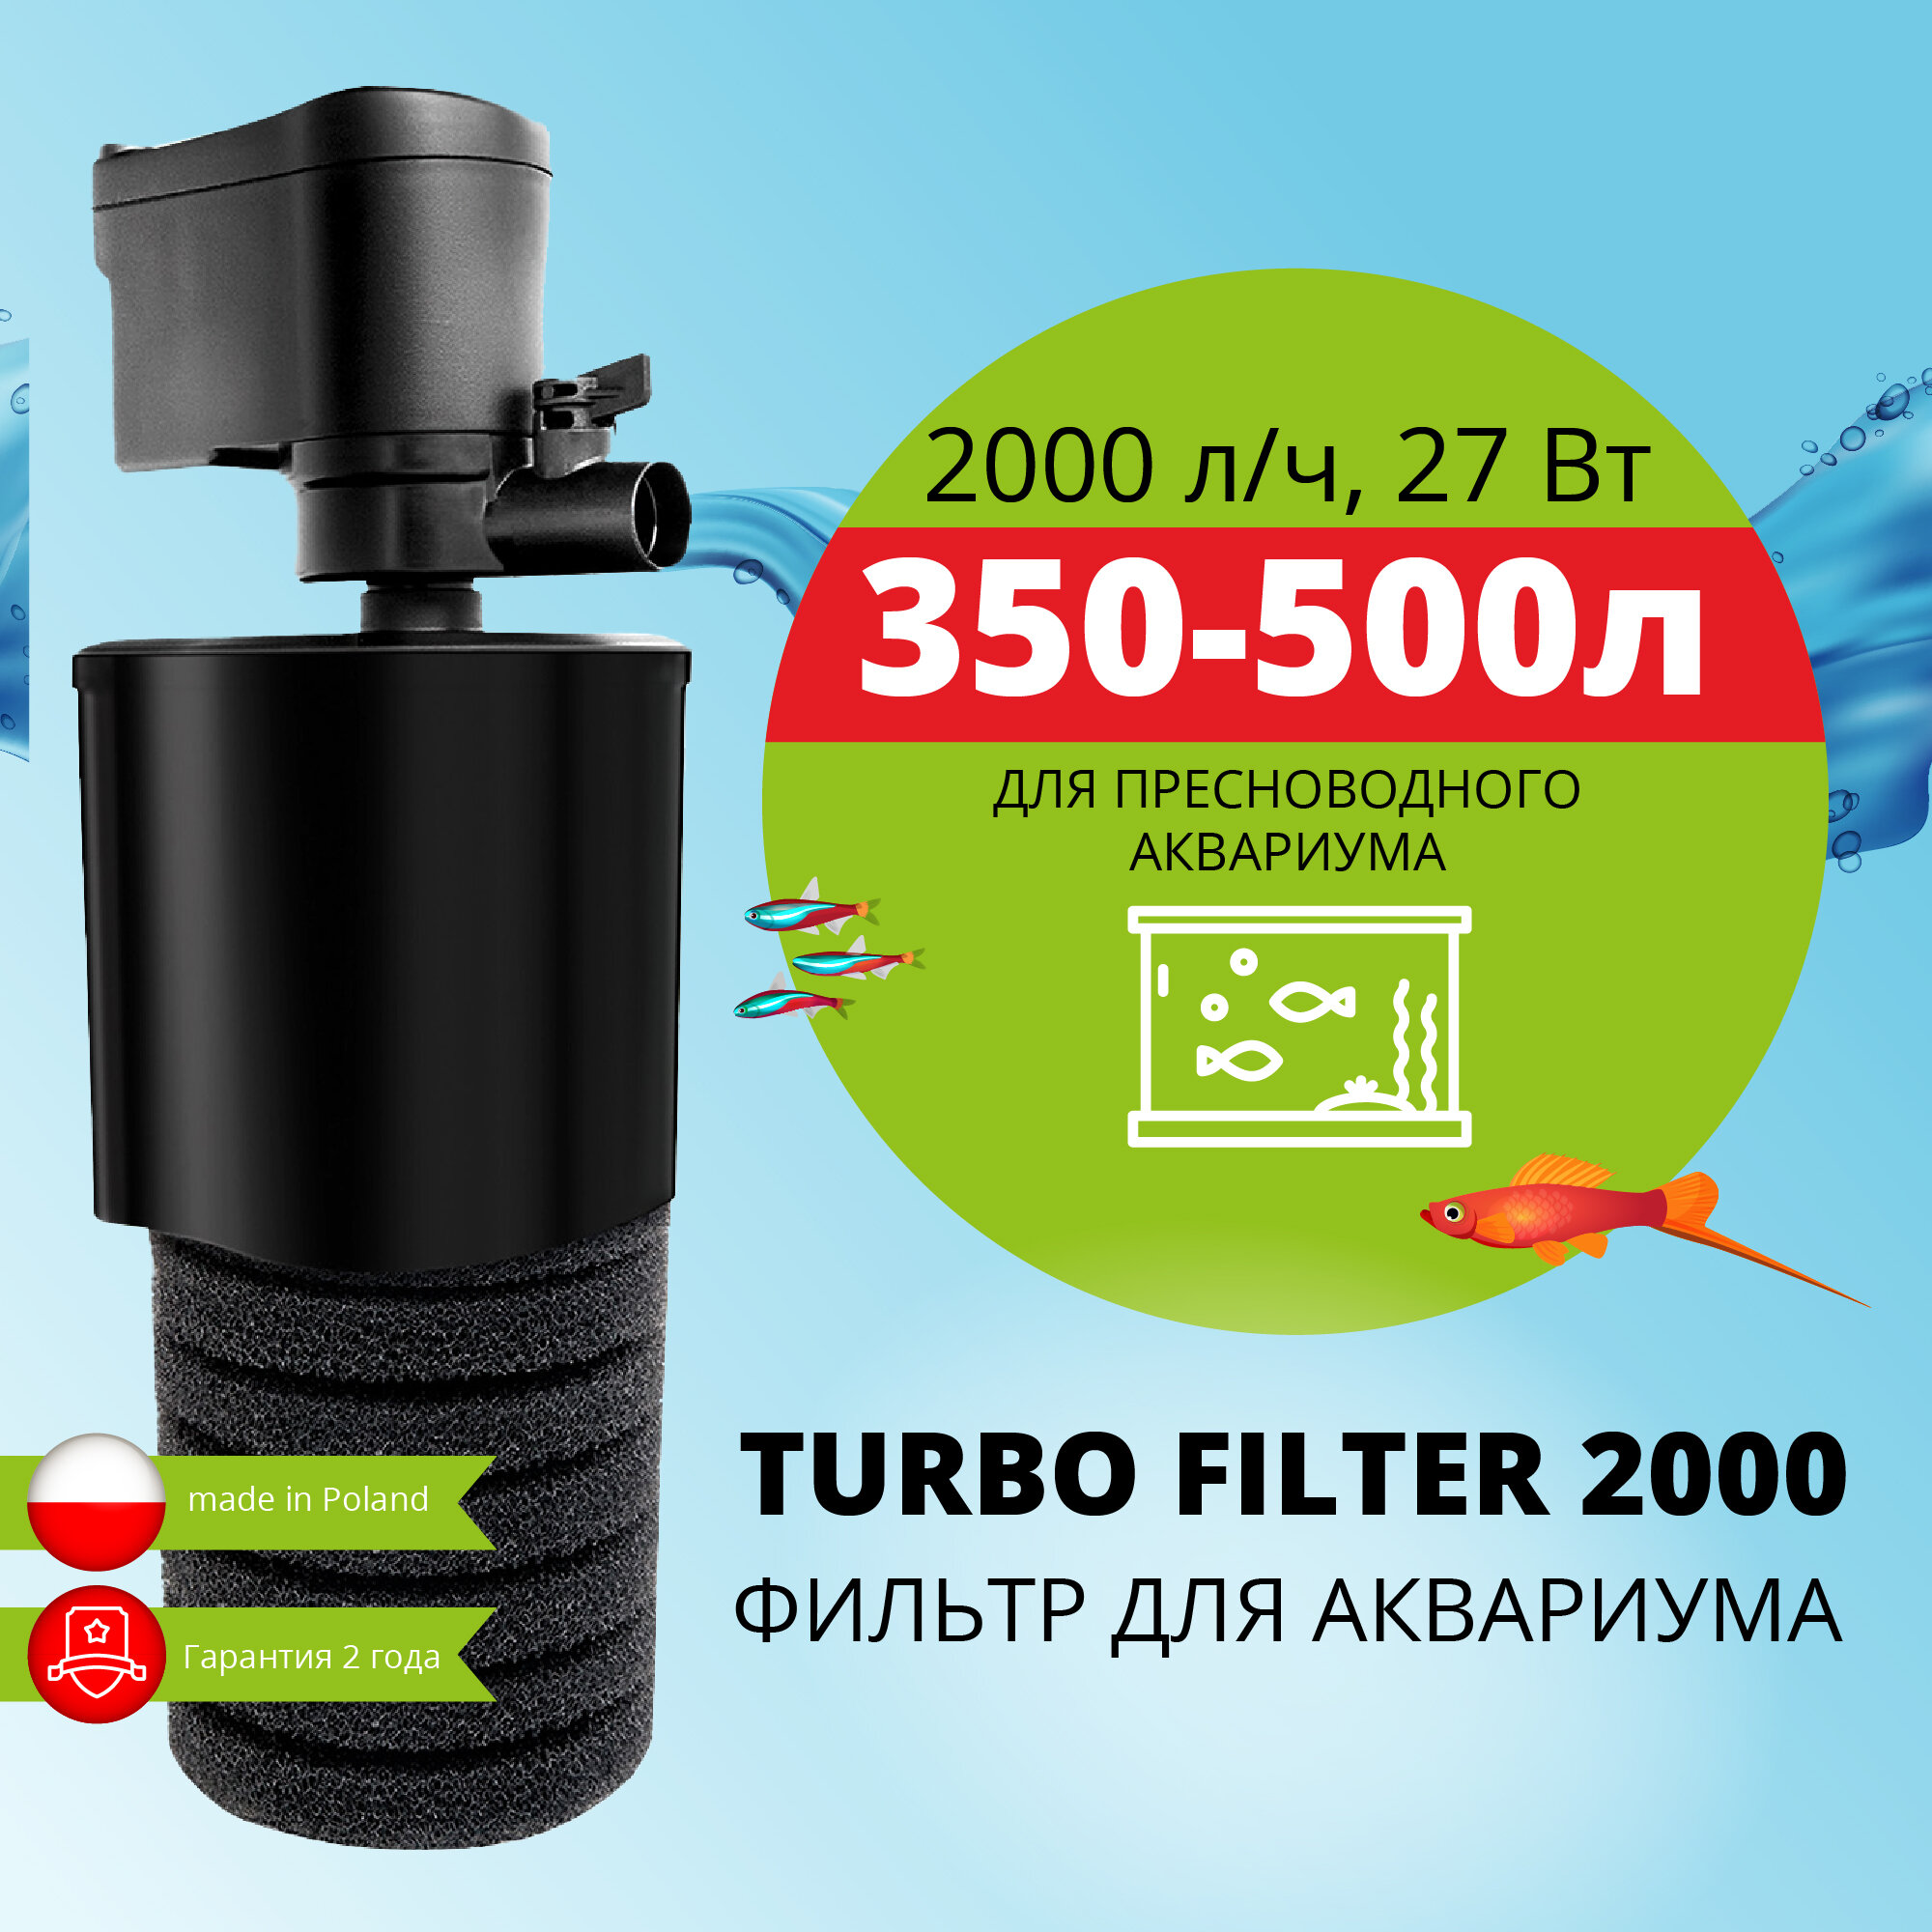 Фильтр внутренний AQUAEL TURBO FILTER 2000 для аквариума 350 - 500 л (2000 л/ч, 27 Вт, h = 190 см)